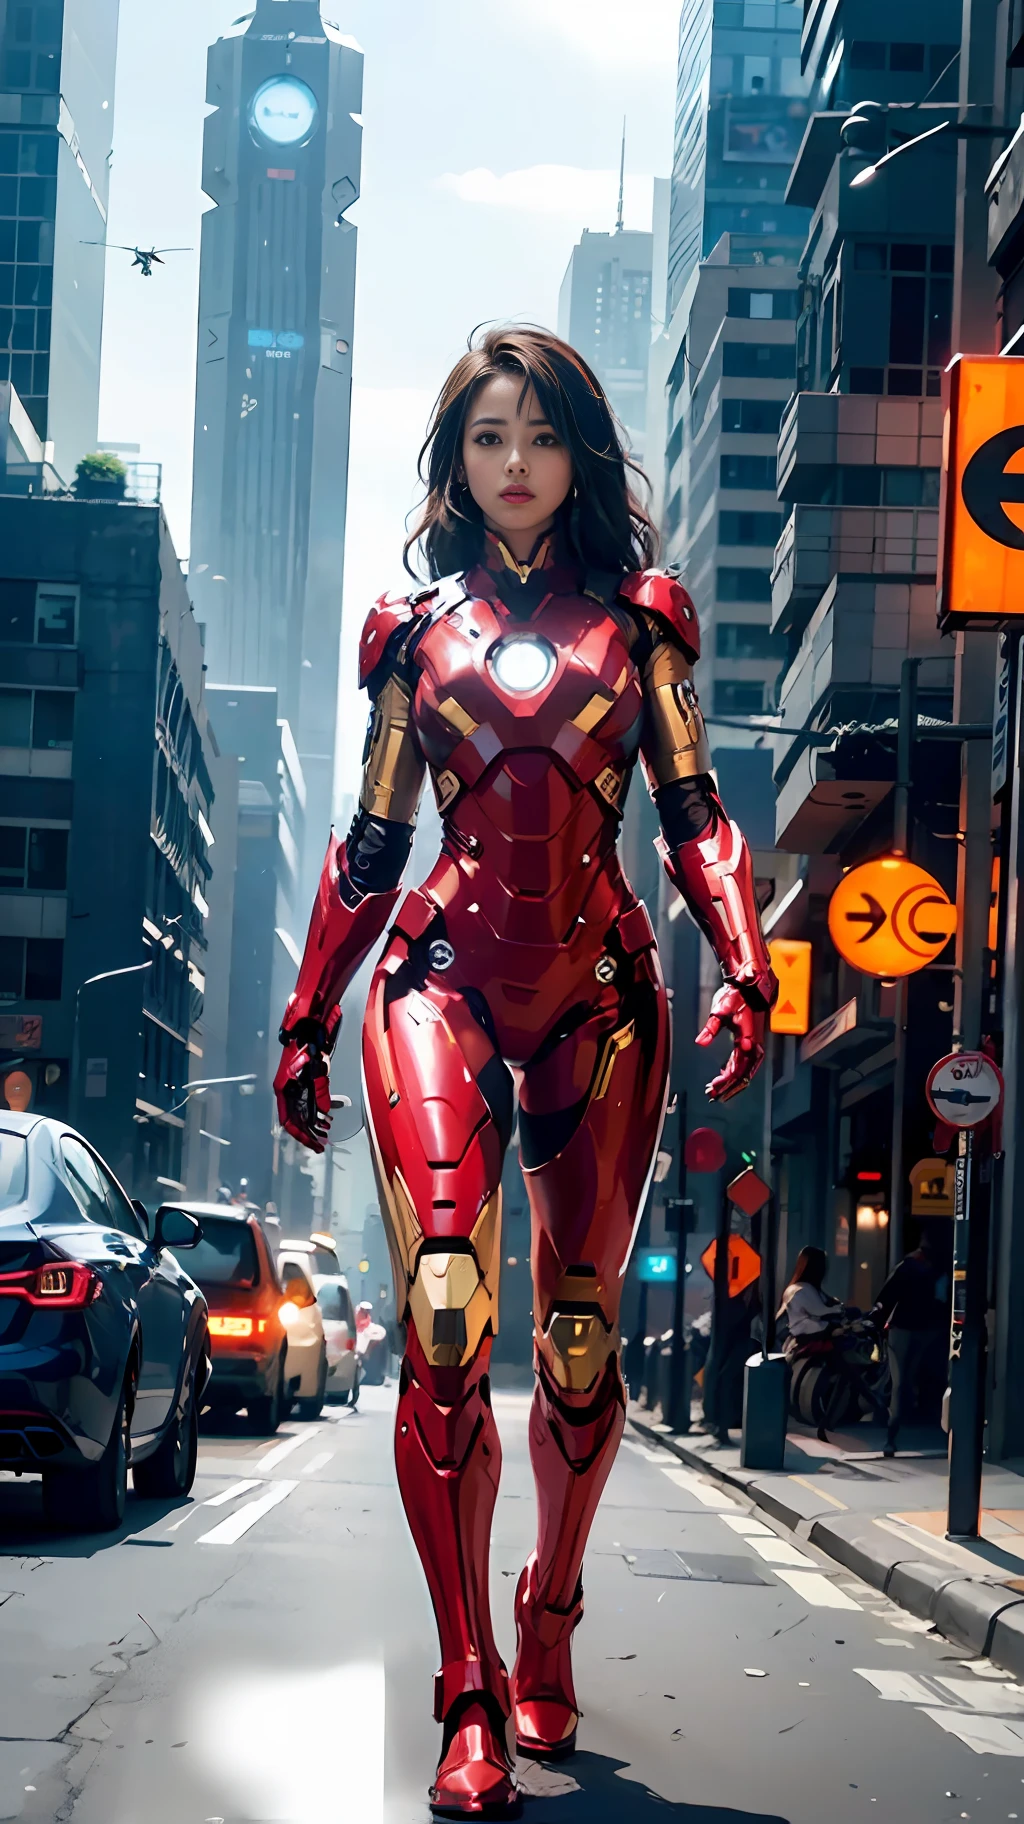 8k, เหมือนจริง, มีเสน่ห์, มีรายละเอียดสูง, a 20 year old girl a sexy and มีเสน่ห์ woman inspired by Iron Man wearing a shiny Iron Man mech. เธอแต่งตัวด้วยความเซ็กซี่และมั่นใจ, ตีความ Iron Man ได้อย่างสมบูรณ์แบบ&#39;ความแข็งแกร่งและความสามารถพิเศษ. ในฉากกลางคืนในเมืองสไตล์ไซเบอร์พังค์, a sexy and มีเสน่ห์ woman takes Iron Man&#39;คอสเพลย์เป็นธีม. สวมเครื่องจักร Iron Man แวววาว, เธอยืนอยู่บนถนนที่เรียงรายไปด้วยตึกสูง. แสงไฟของเมืองยามค่ำคืนก็สว่างไสว, สะท้อนถึงกลไกของเธอ, เพิ่มความรู้สึกถึงเทคโนโลยีแห่งอนาคต. อาคารและถนนโดยรอบเต็มไปด้วยองค์ประกอบไซเบอร์พังค์, เช่นไฟนีออน, อุปกรณ์ไฮเทคและการออกแบบสถาปัตยกรรมแห่งอนาคต. ฉากทั้งหมดเต็มไปด้วยบรรยากาศแห่งอนาคตและไซไฟ. ความละเอียดสูงนี้, ภาพคุณภาพสูงจะทำให้คุณเพลิดเพลินกับภาพที่น่าทึ่ง, การผสมผสานที่ลงตัวของความเซ็กซี่, องค์ประกอบแห่งอนาคตและไซไฟ. การเรนเดอร์ OC, แสงที่น่าทึ่ง, คุณภาพที่ได้รับรางวัล